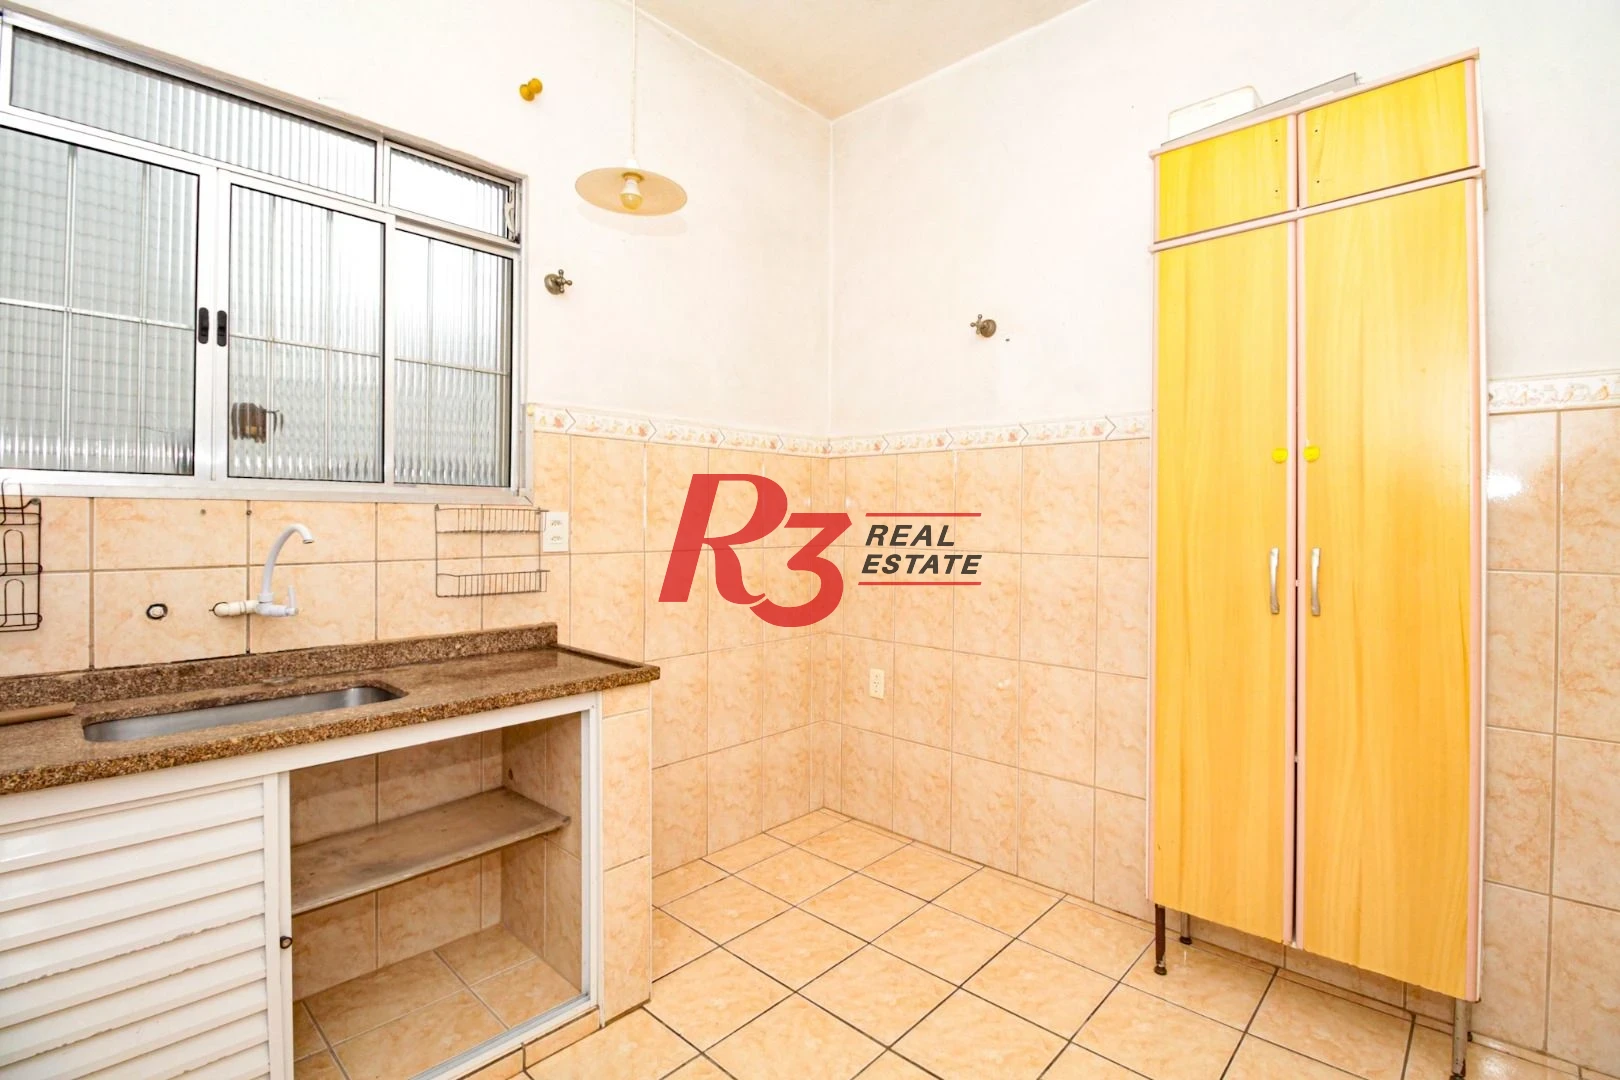 Sobrado para alugar, 250 m² por R$ 8.000,00/mês - Campo Grande - Santos/SP